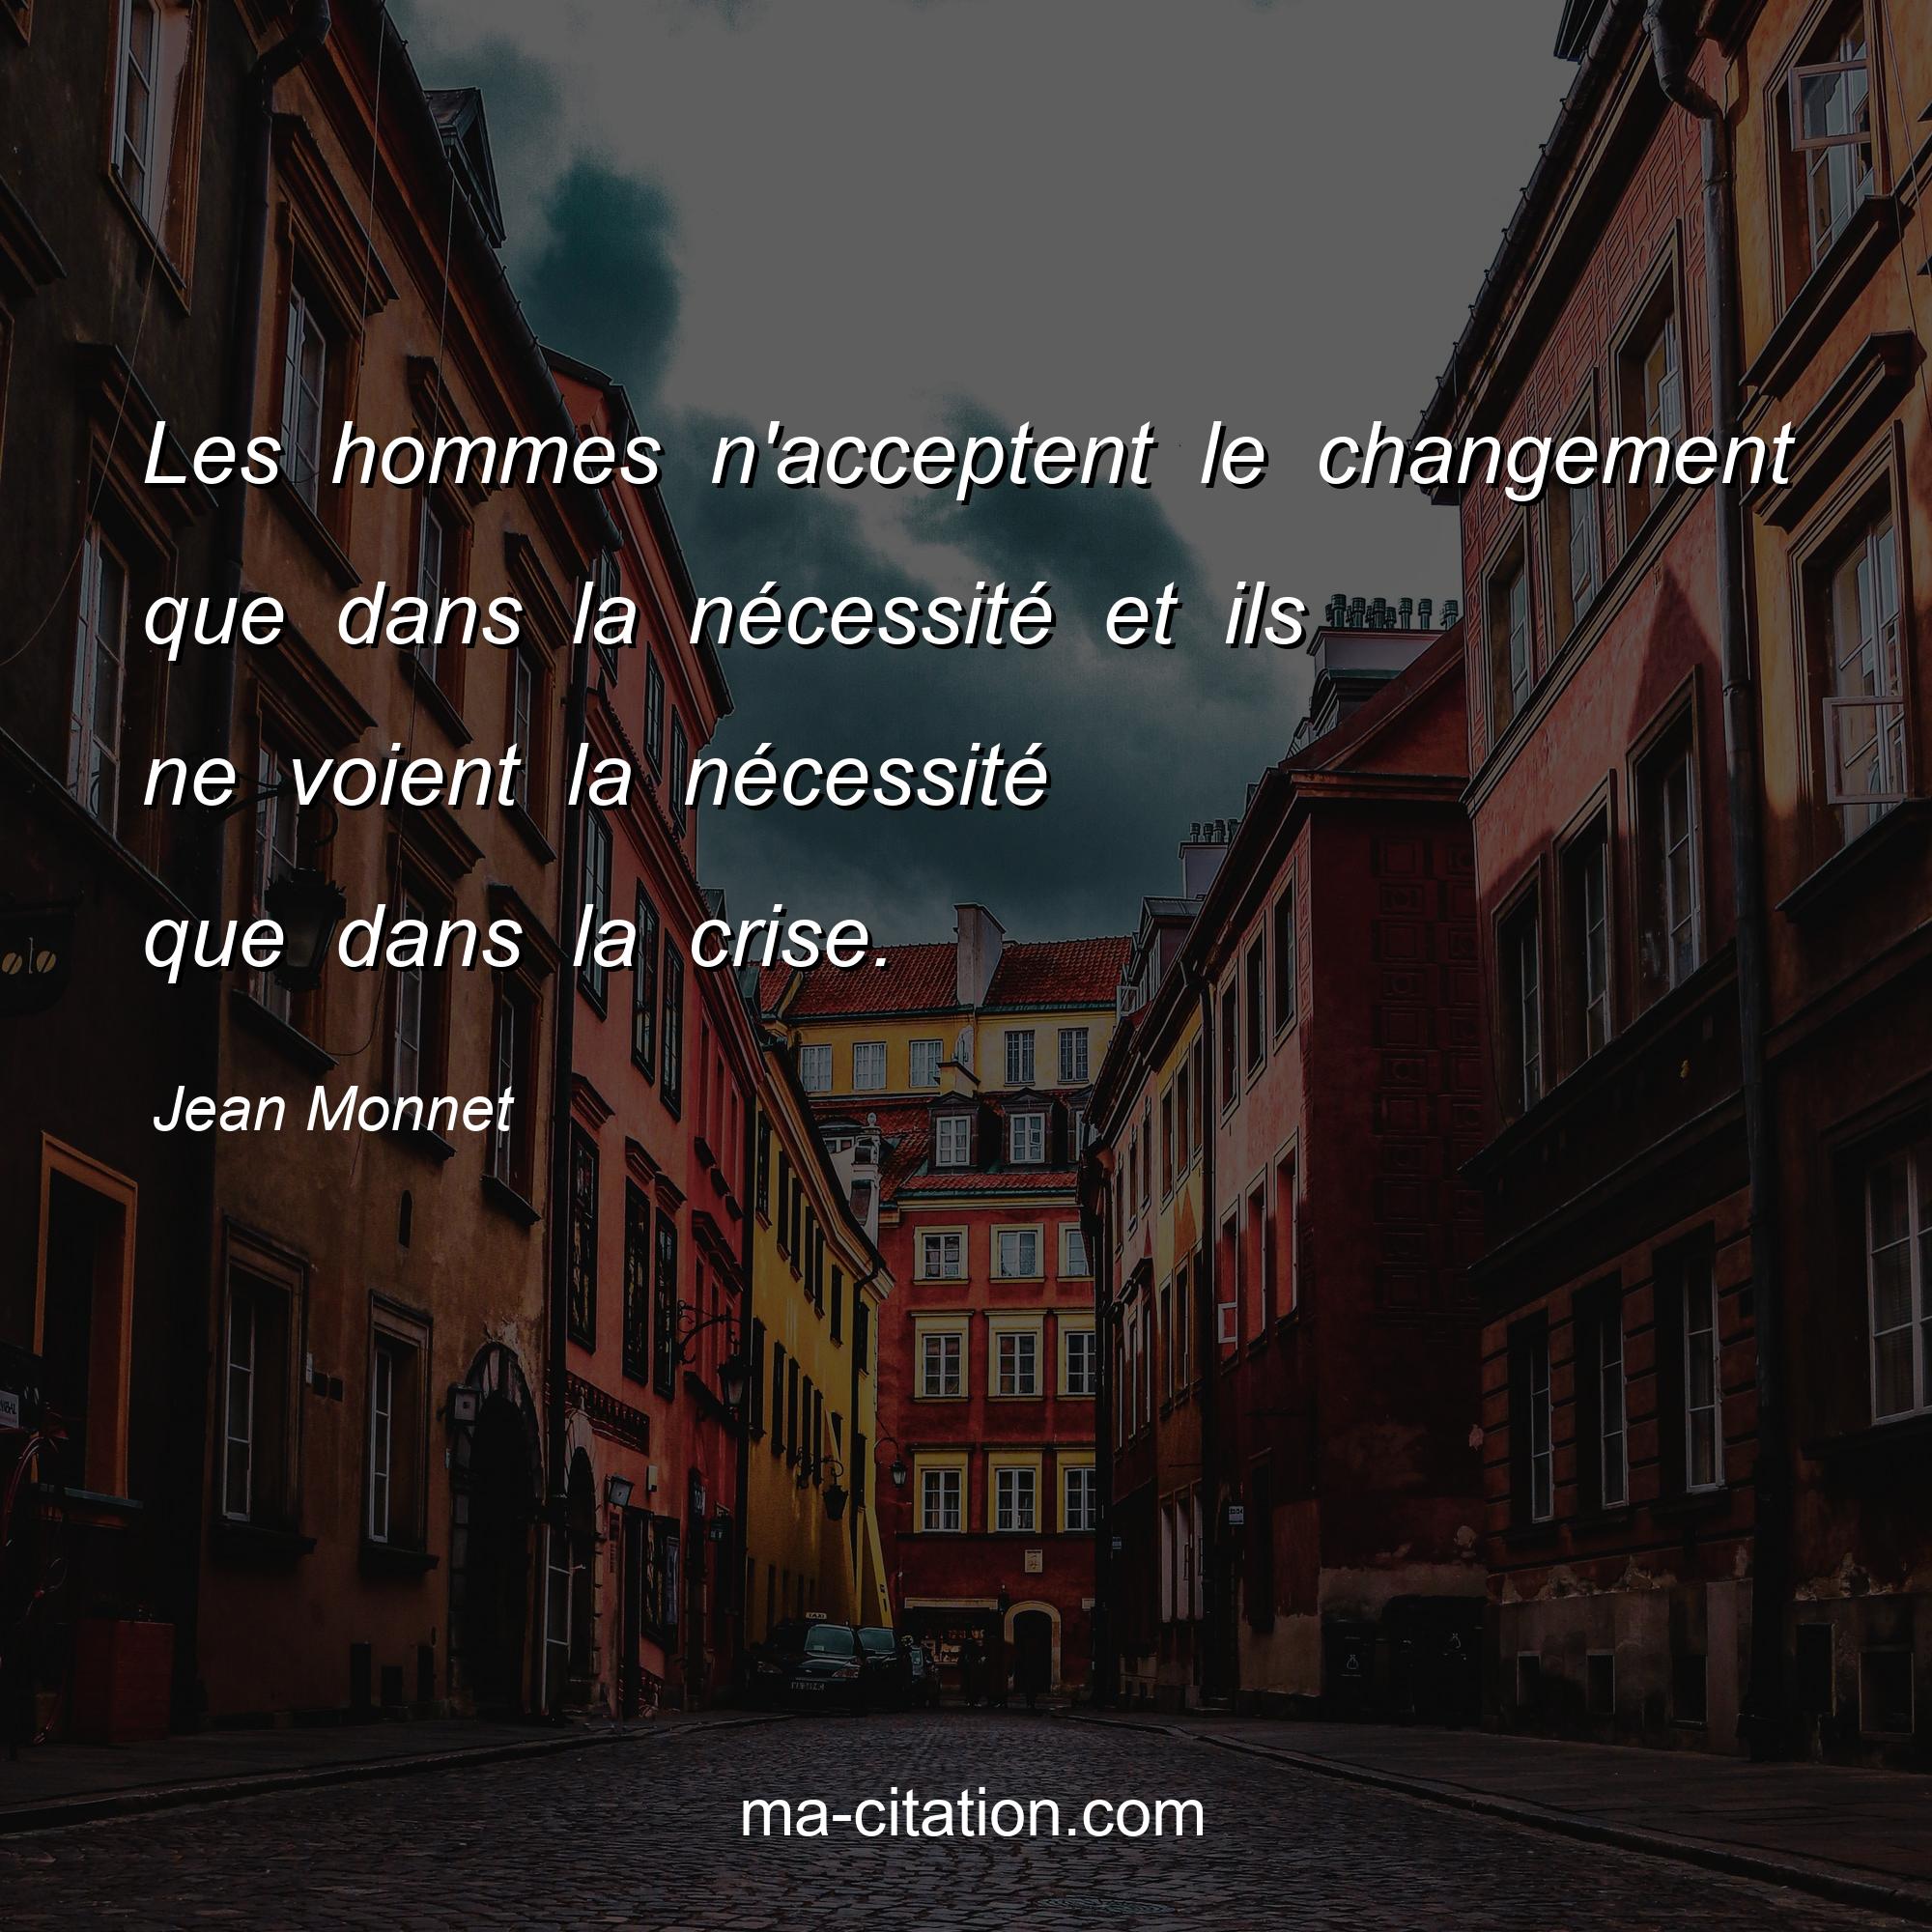 Jean Monnet : Les hommes n'acceptent le changement que dans la nécessité et ils ne voient la nécessité que dans la crise. 